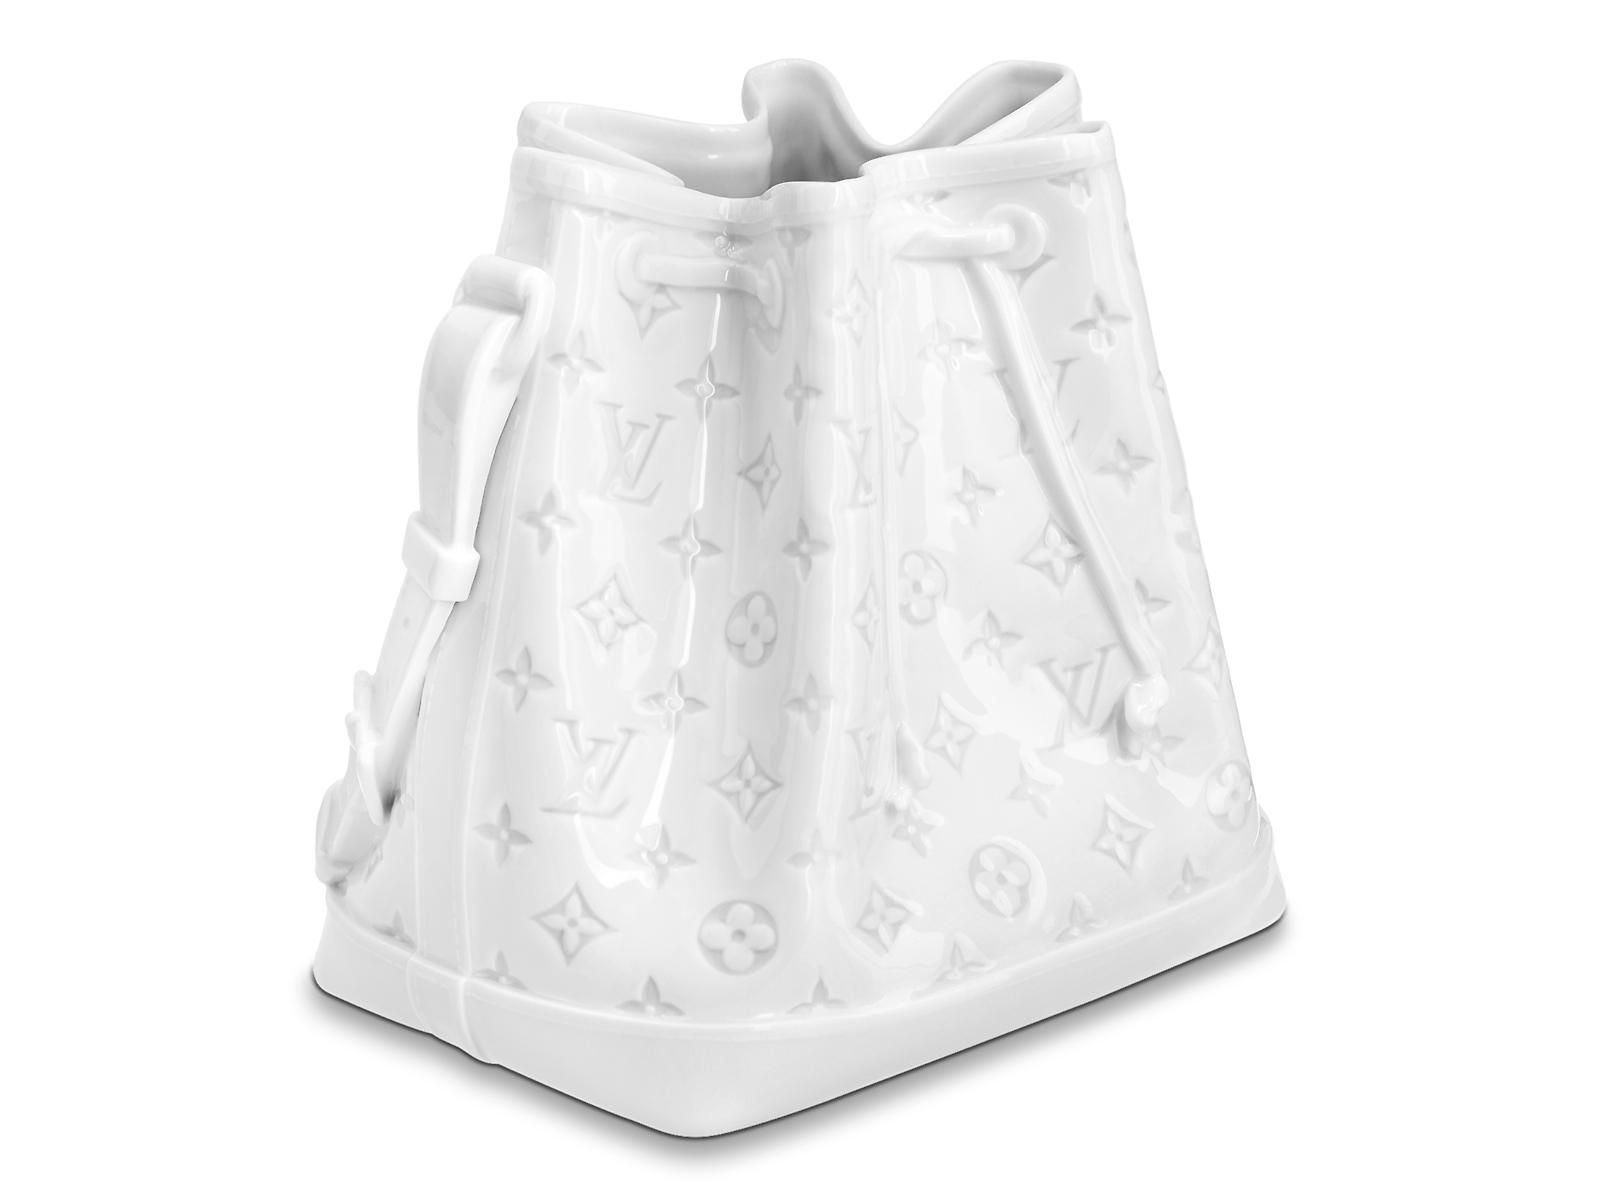 Louis Vuitton's new handbag is actually a porcelain vase - HIGHXTAR.